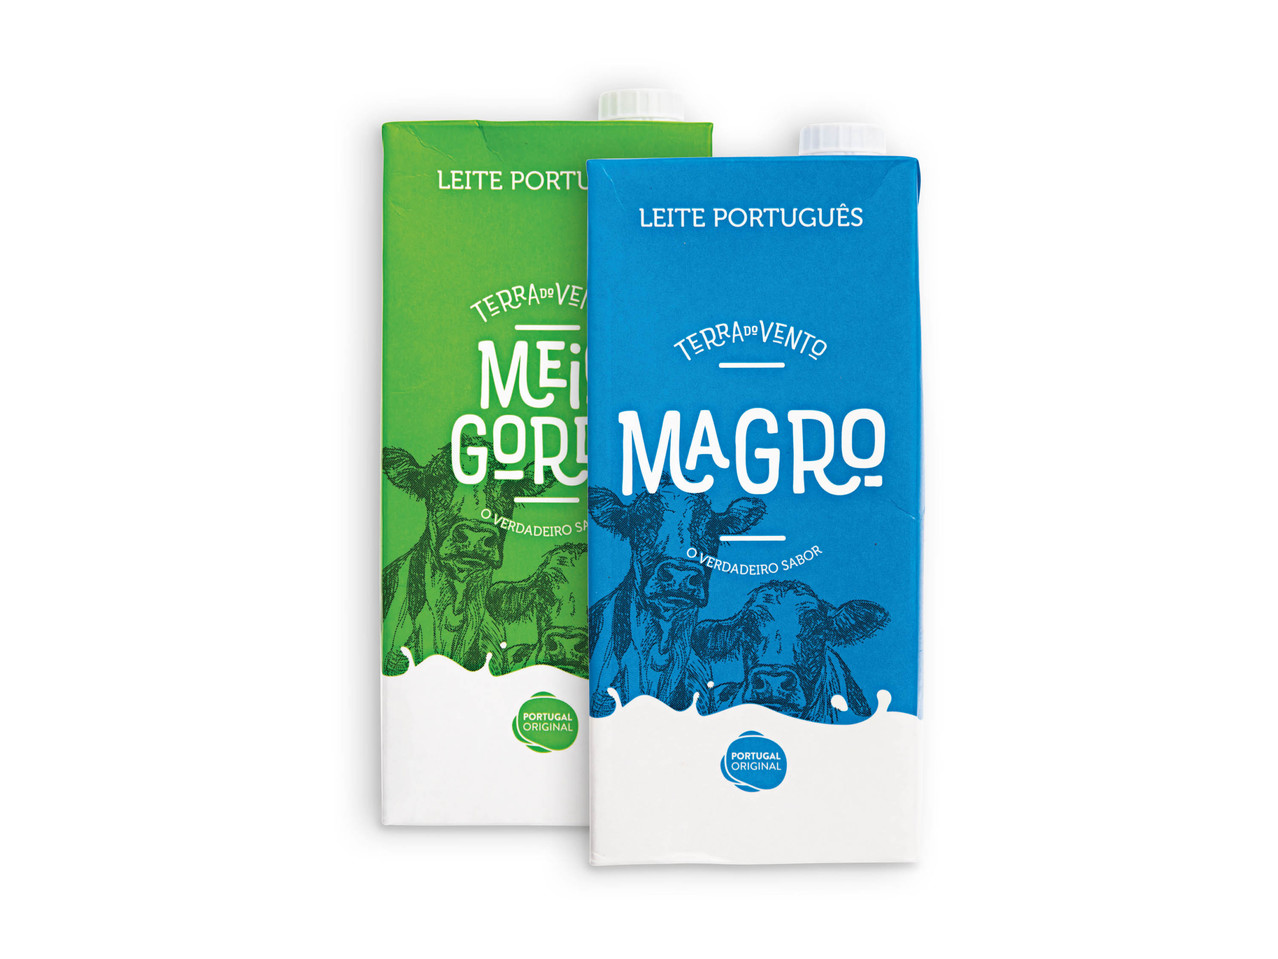 TERRA DO VENTO(R) Leite Meio-gordo / Magro